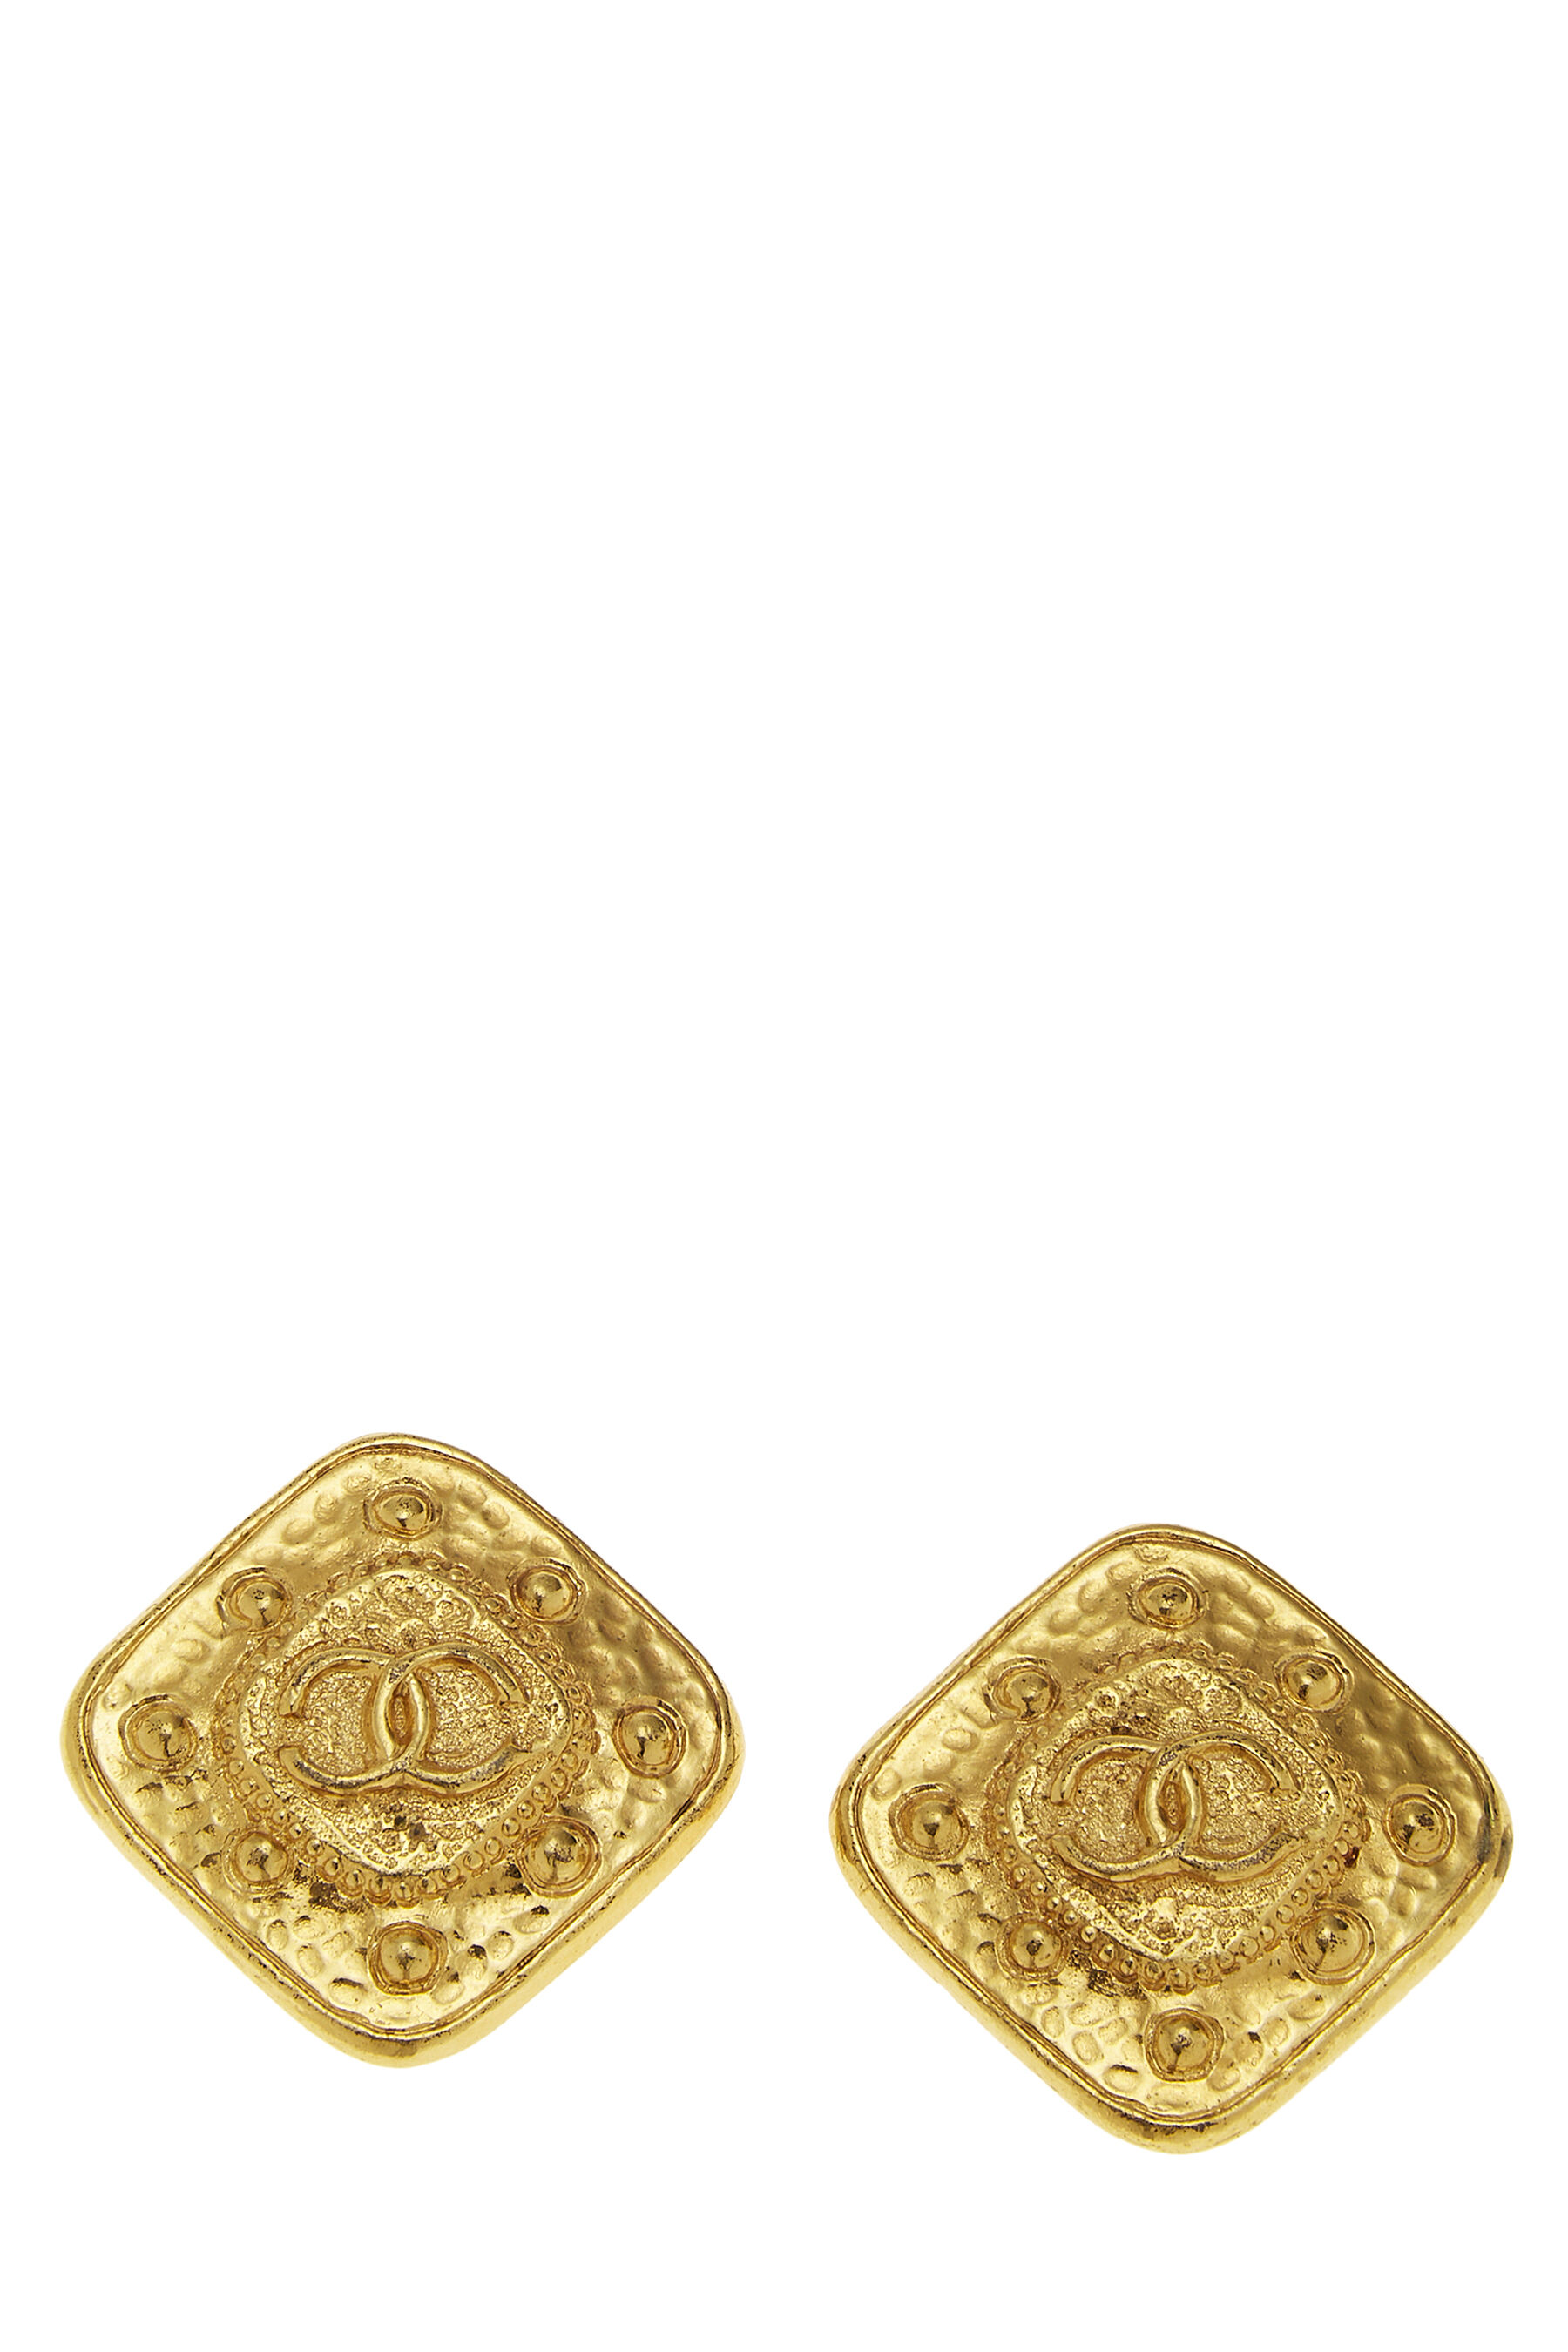 Chanel Gold 'CC' on Diamond Earrings Q6JHZF17DB014